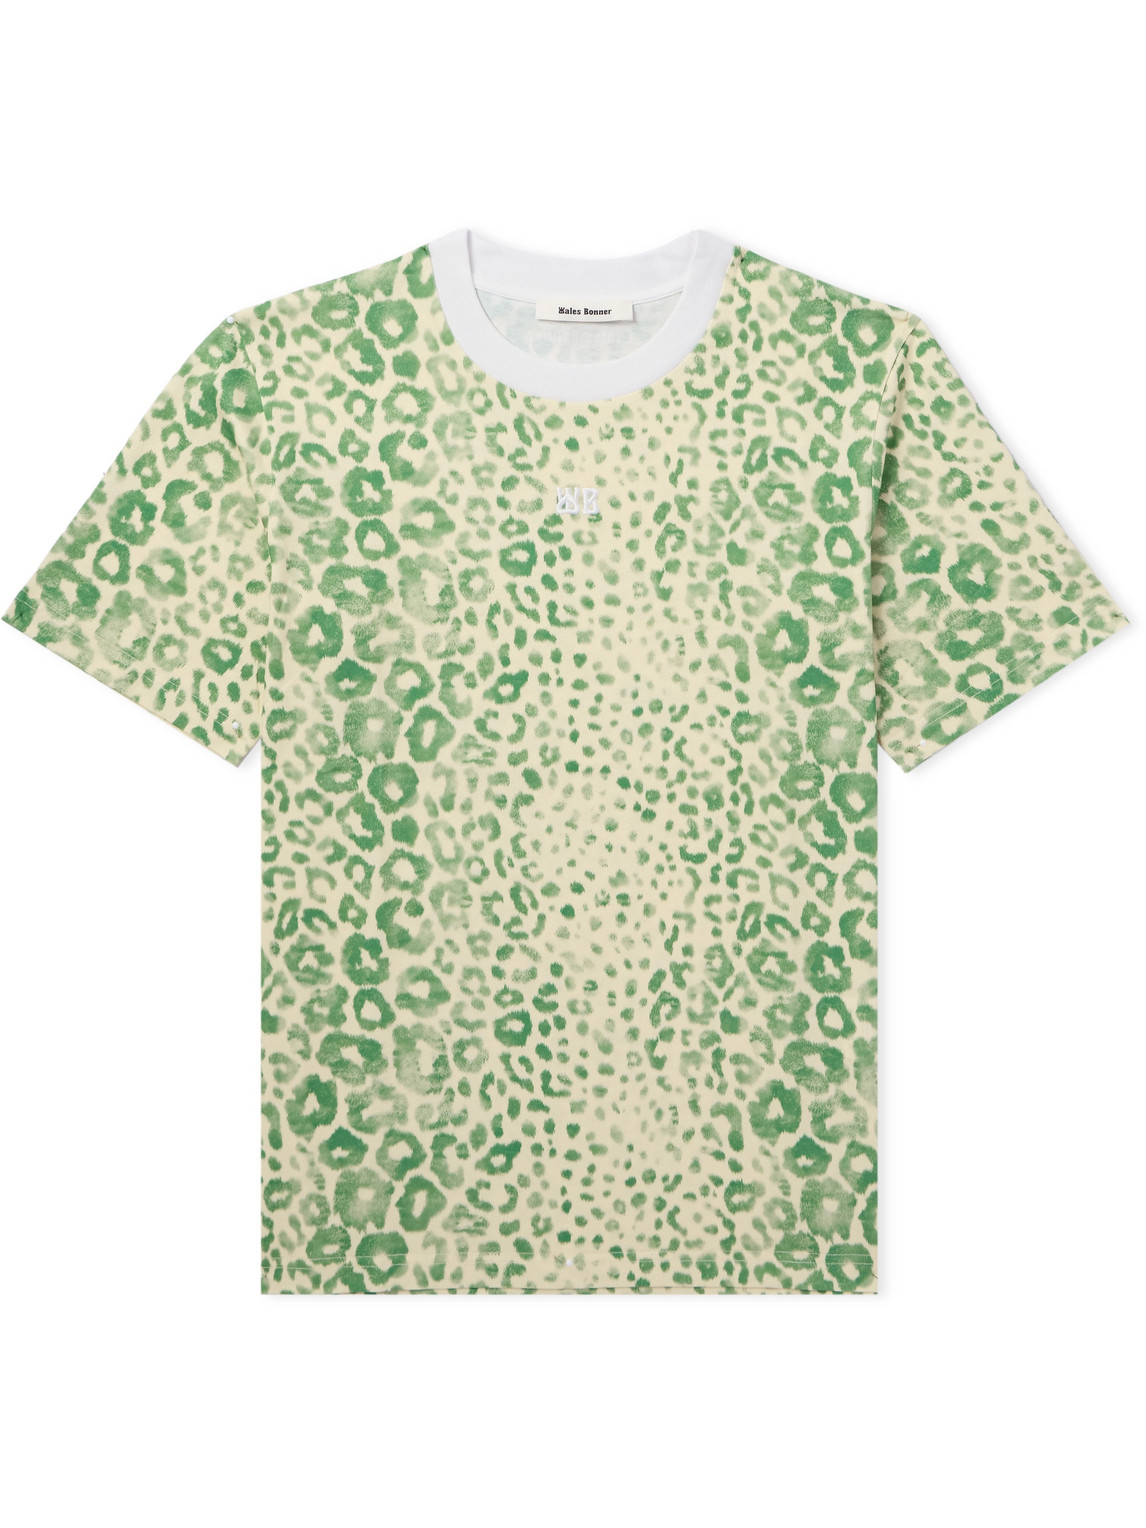 Wales Bonner - Original Logo-Embroidered Leopard-Print Organic Cotton-Jersey T-Shirt - Men - Green - XXL von Wales Bonner